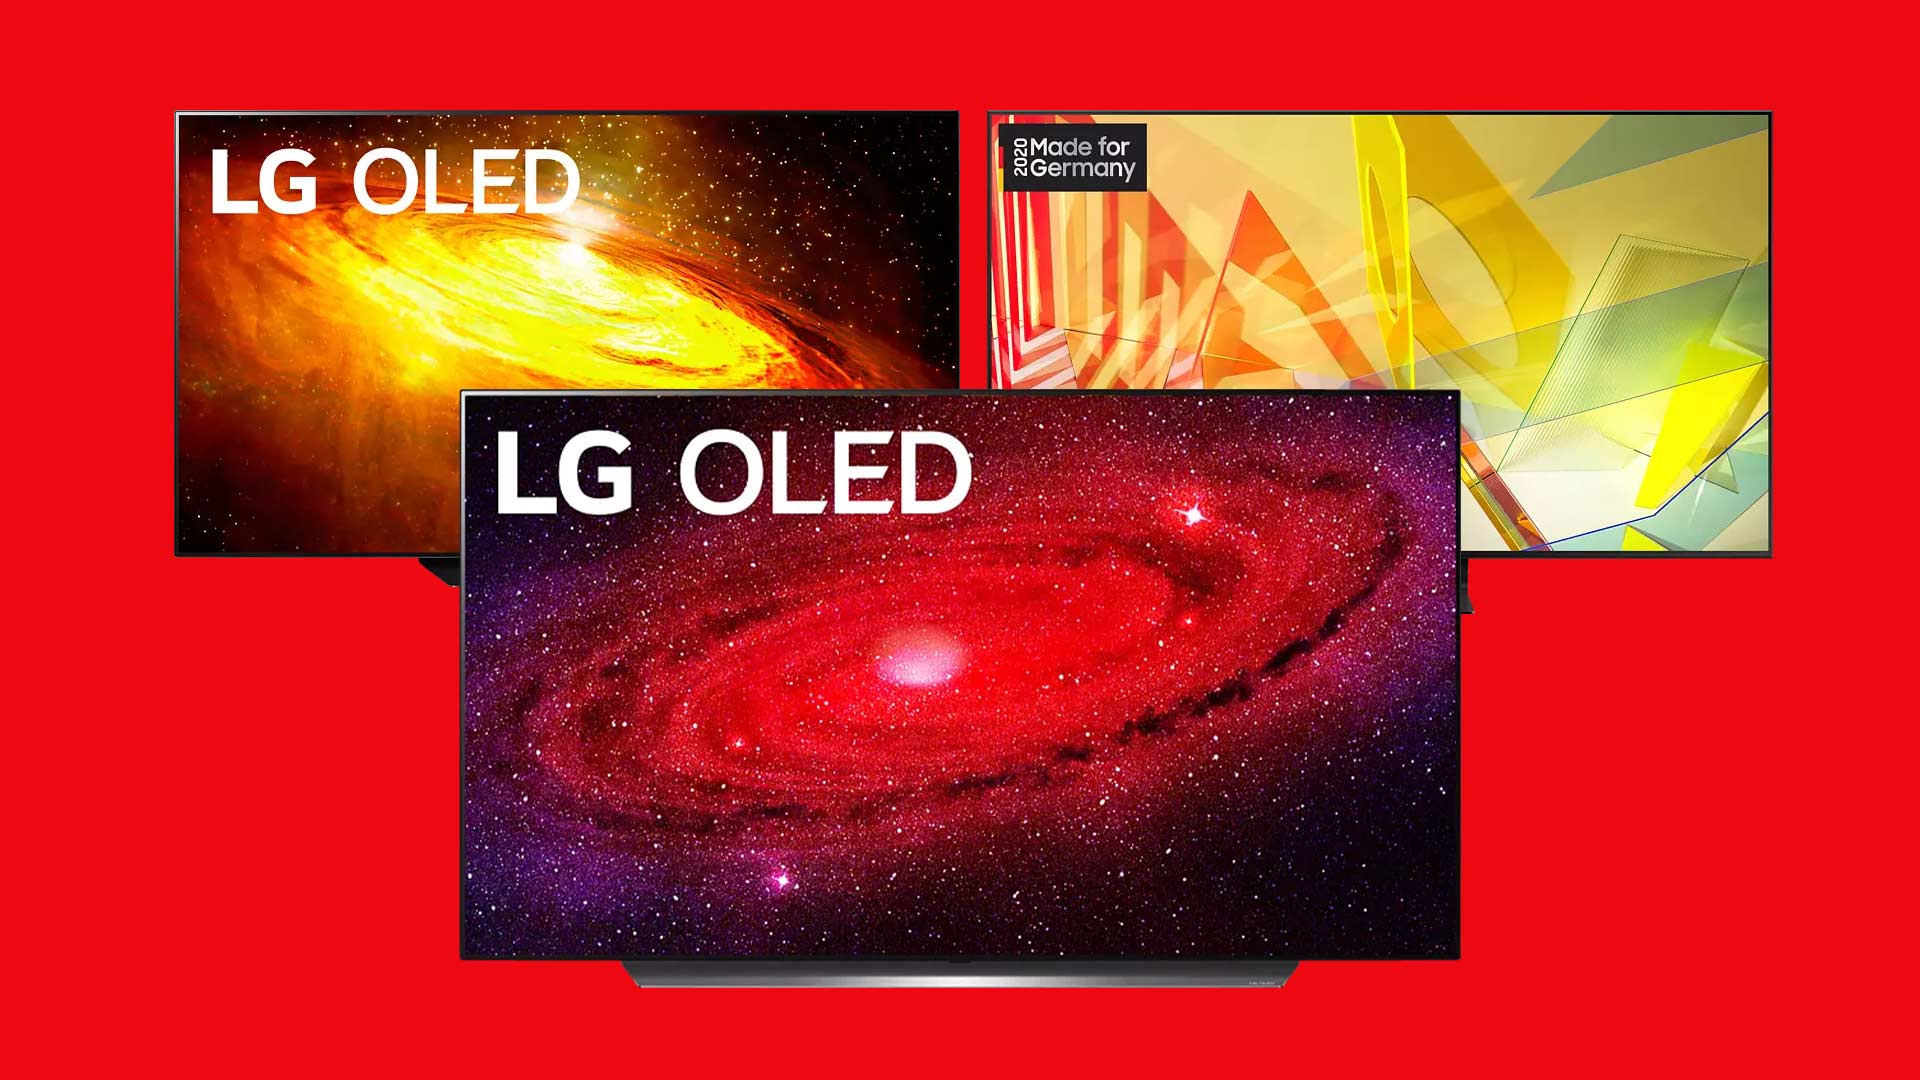 MediaMarkt Prospekt Angebote: LG OLED 4K TV mit HDMI 2.1 für PS5 & Xbox Series X